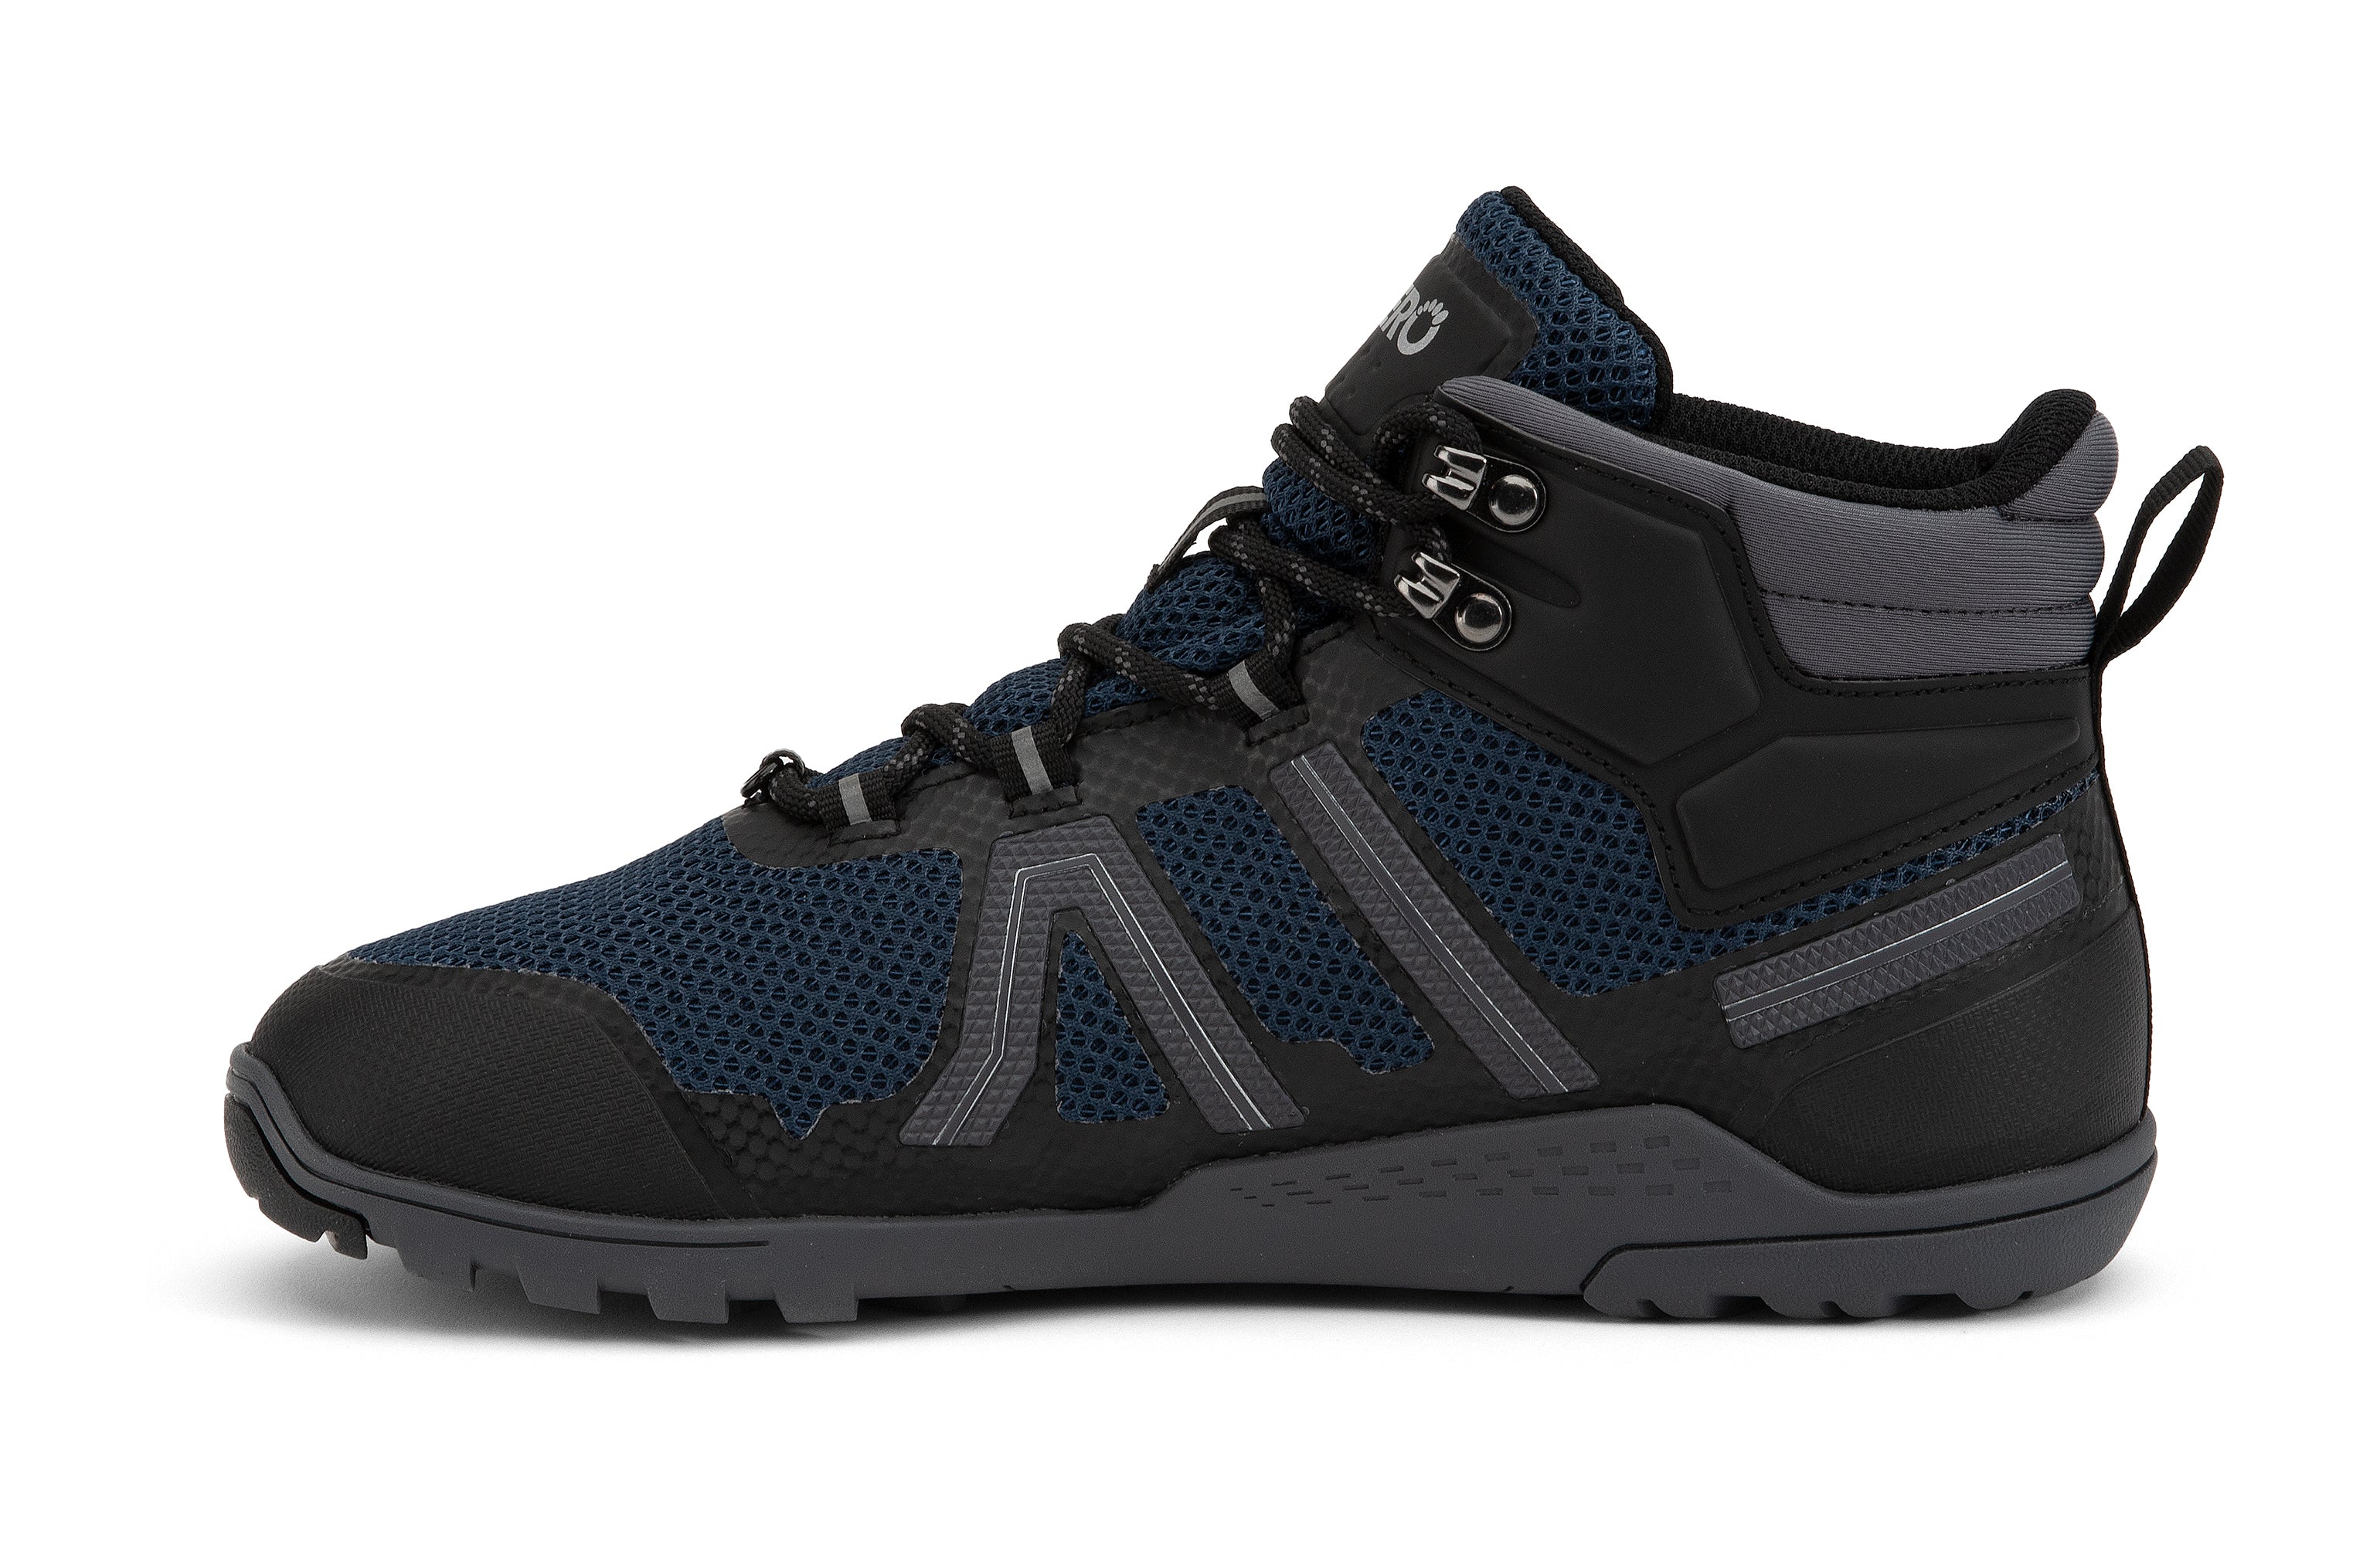 Xero Shoes Xcursion Fusion barfods støvler til mænd i farven moonlit blue / black, inderside